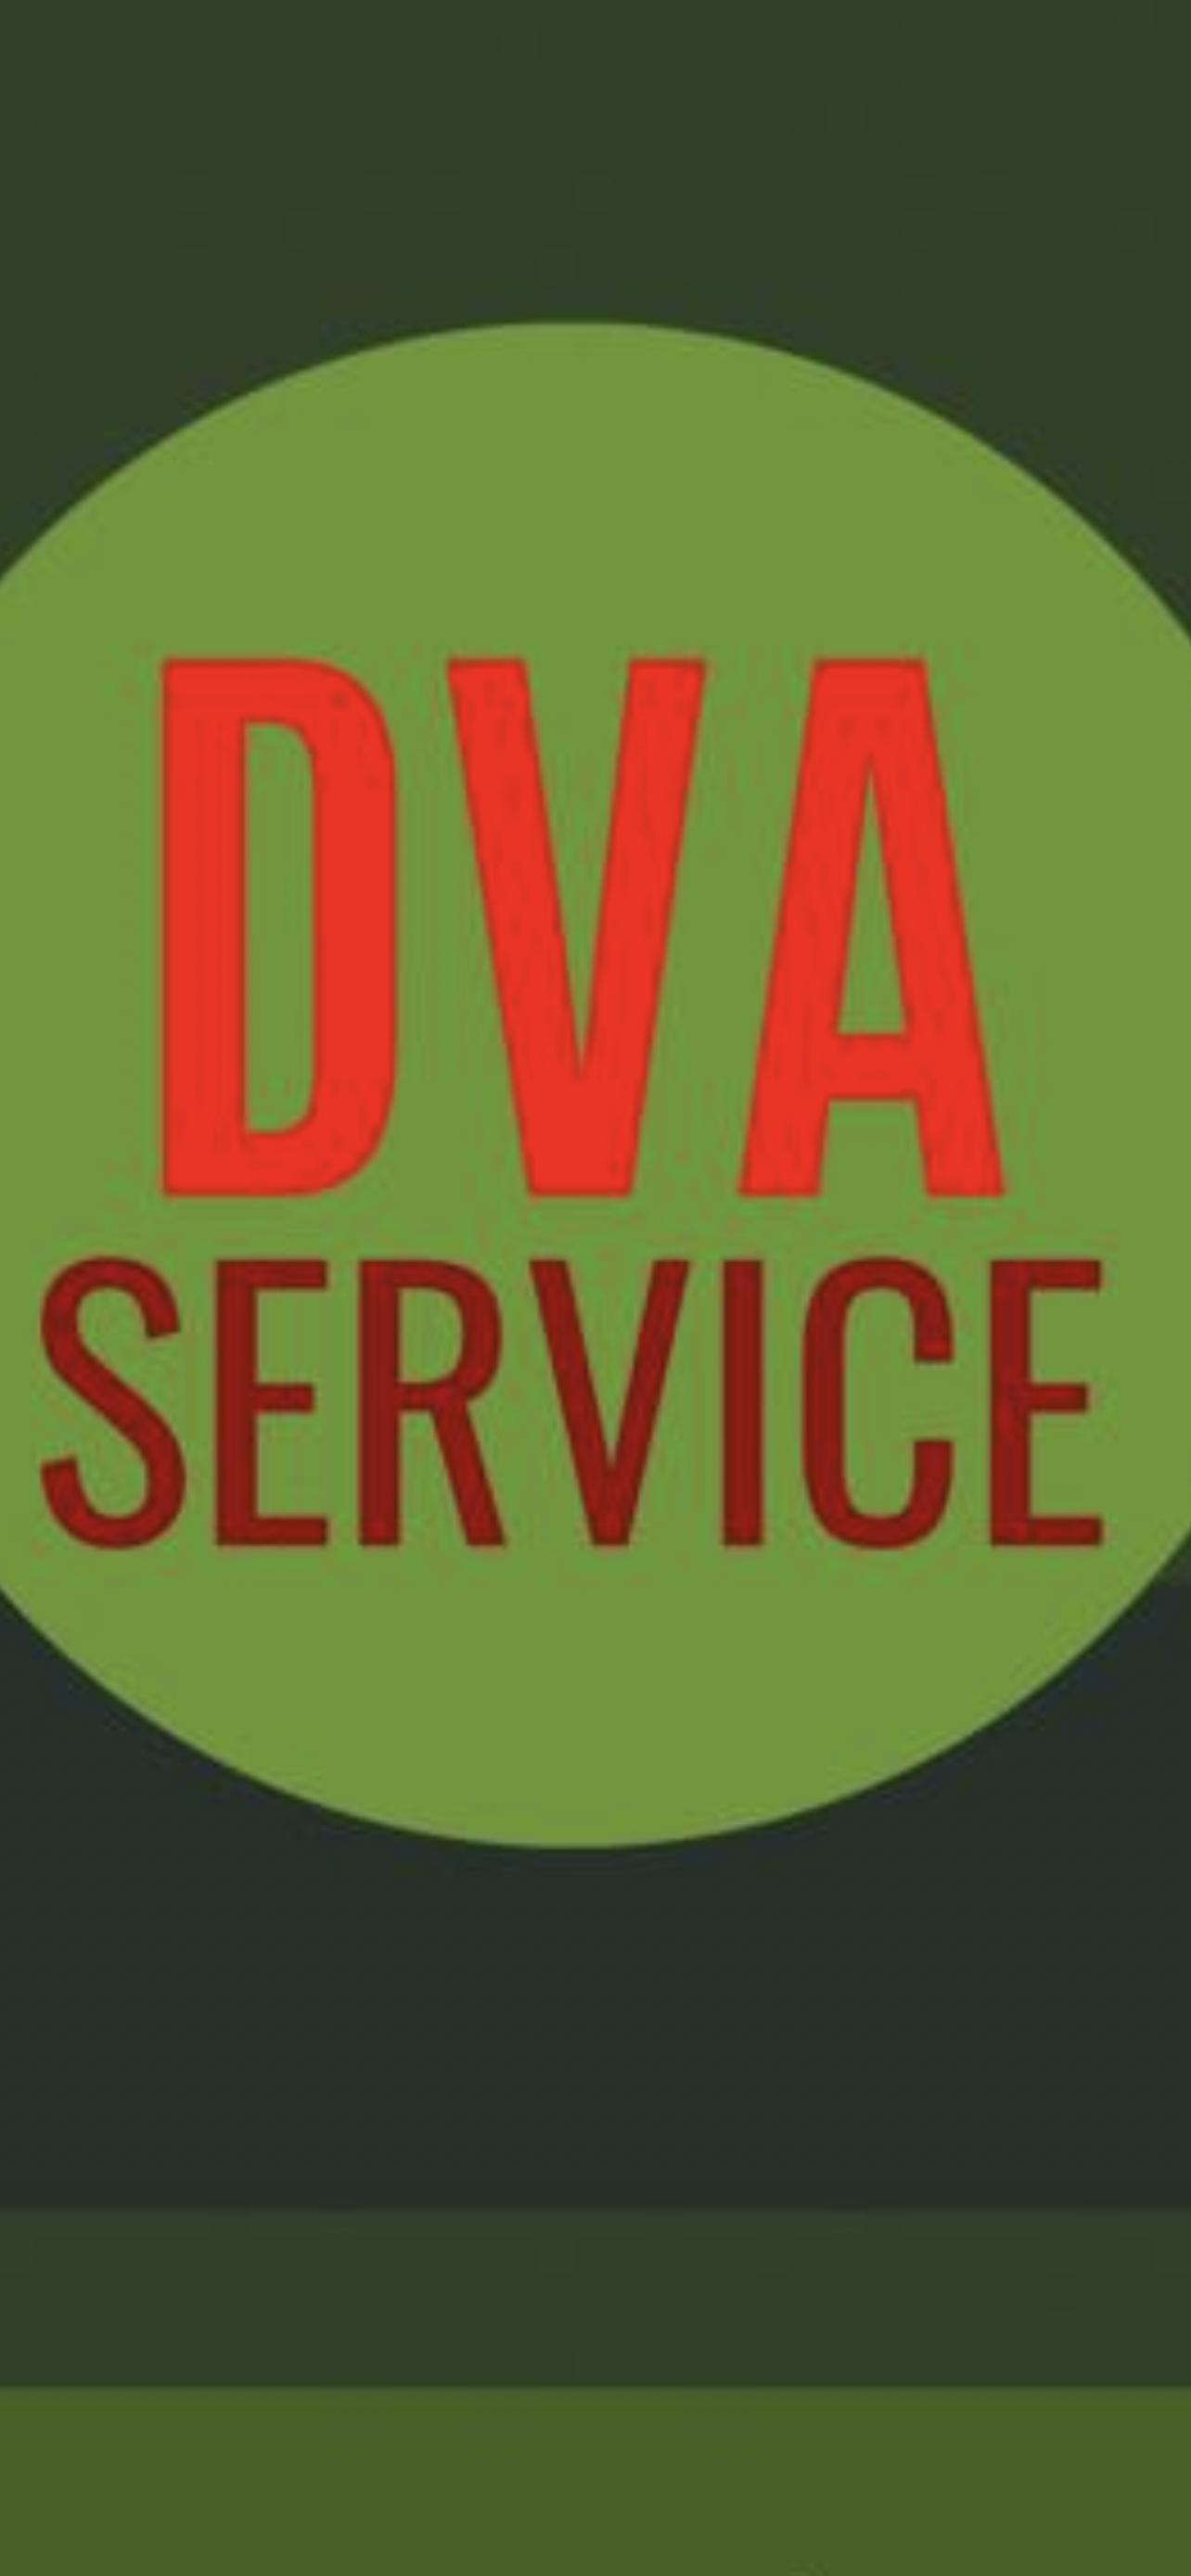 Société Dva service